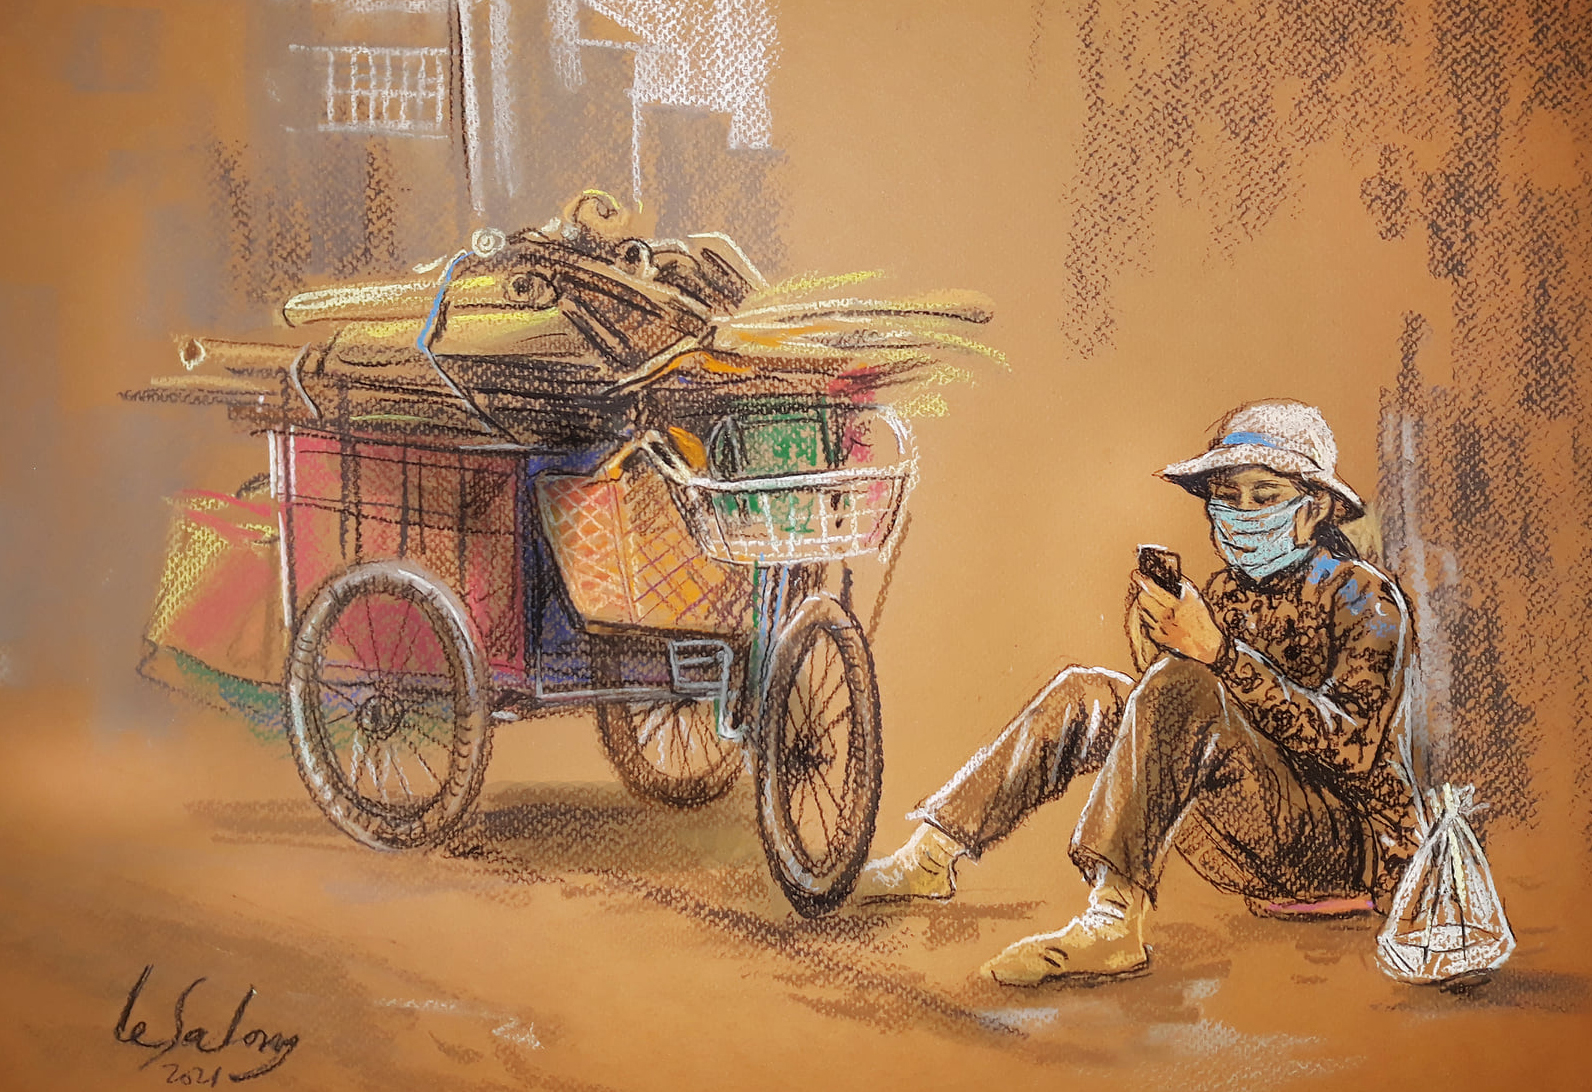 Tác phẩm Phút nghỉ trưa của người mua ve chai, nằm trong bộ tranh Sài Gòn trong những ngày giãn cách, của họa sĩ Lê Sa Long.